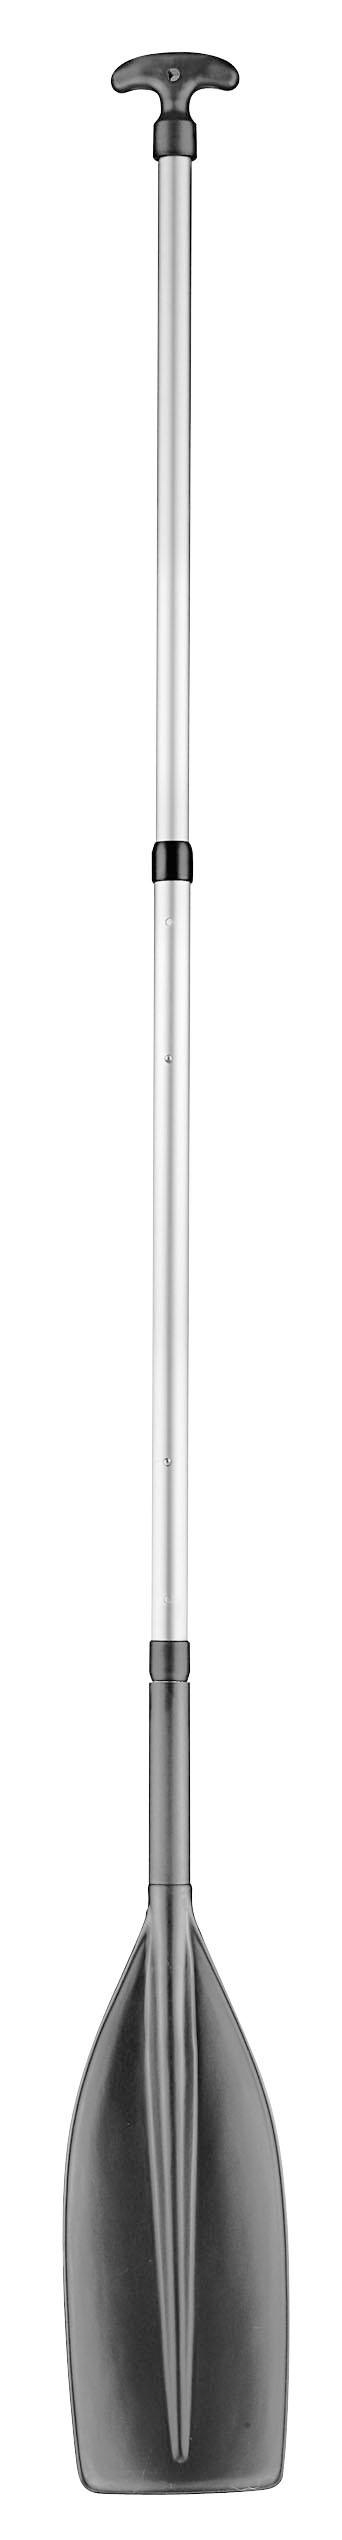 'SUP-Paddel' Aluminium 190 - 210 cm